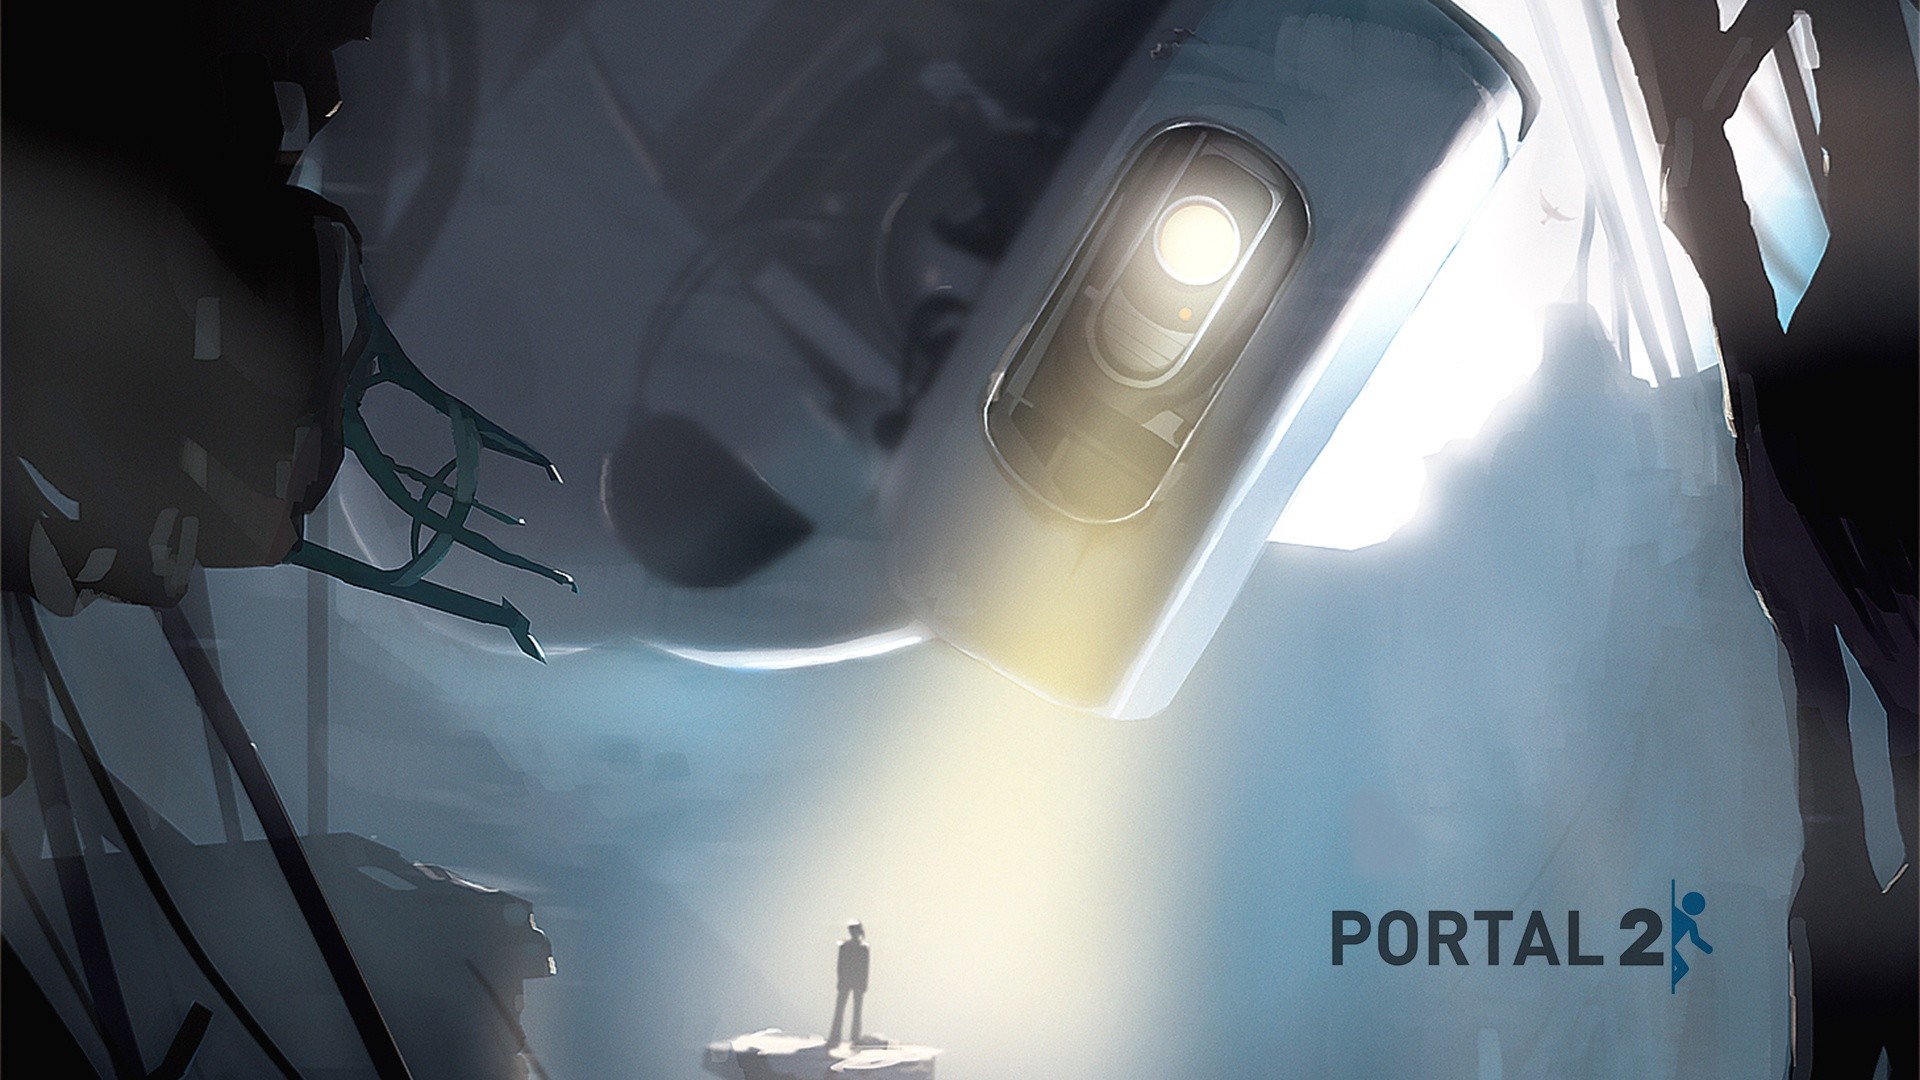 portal 2 images